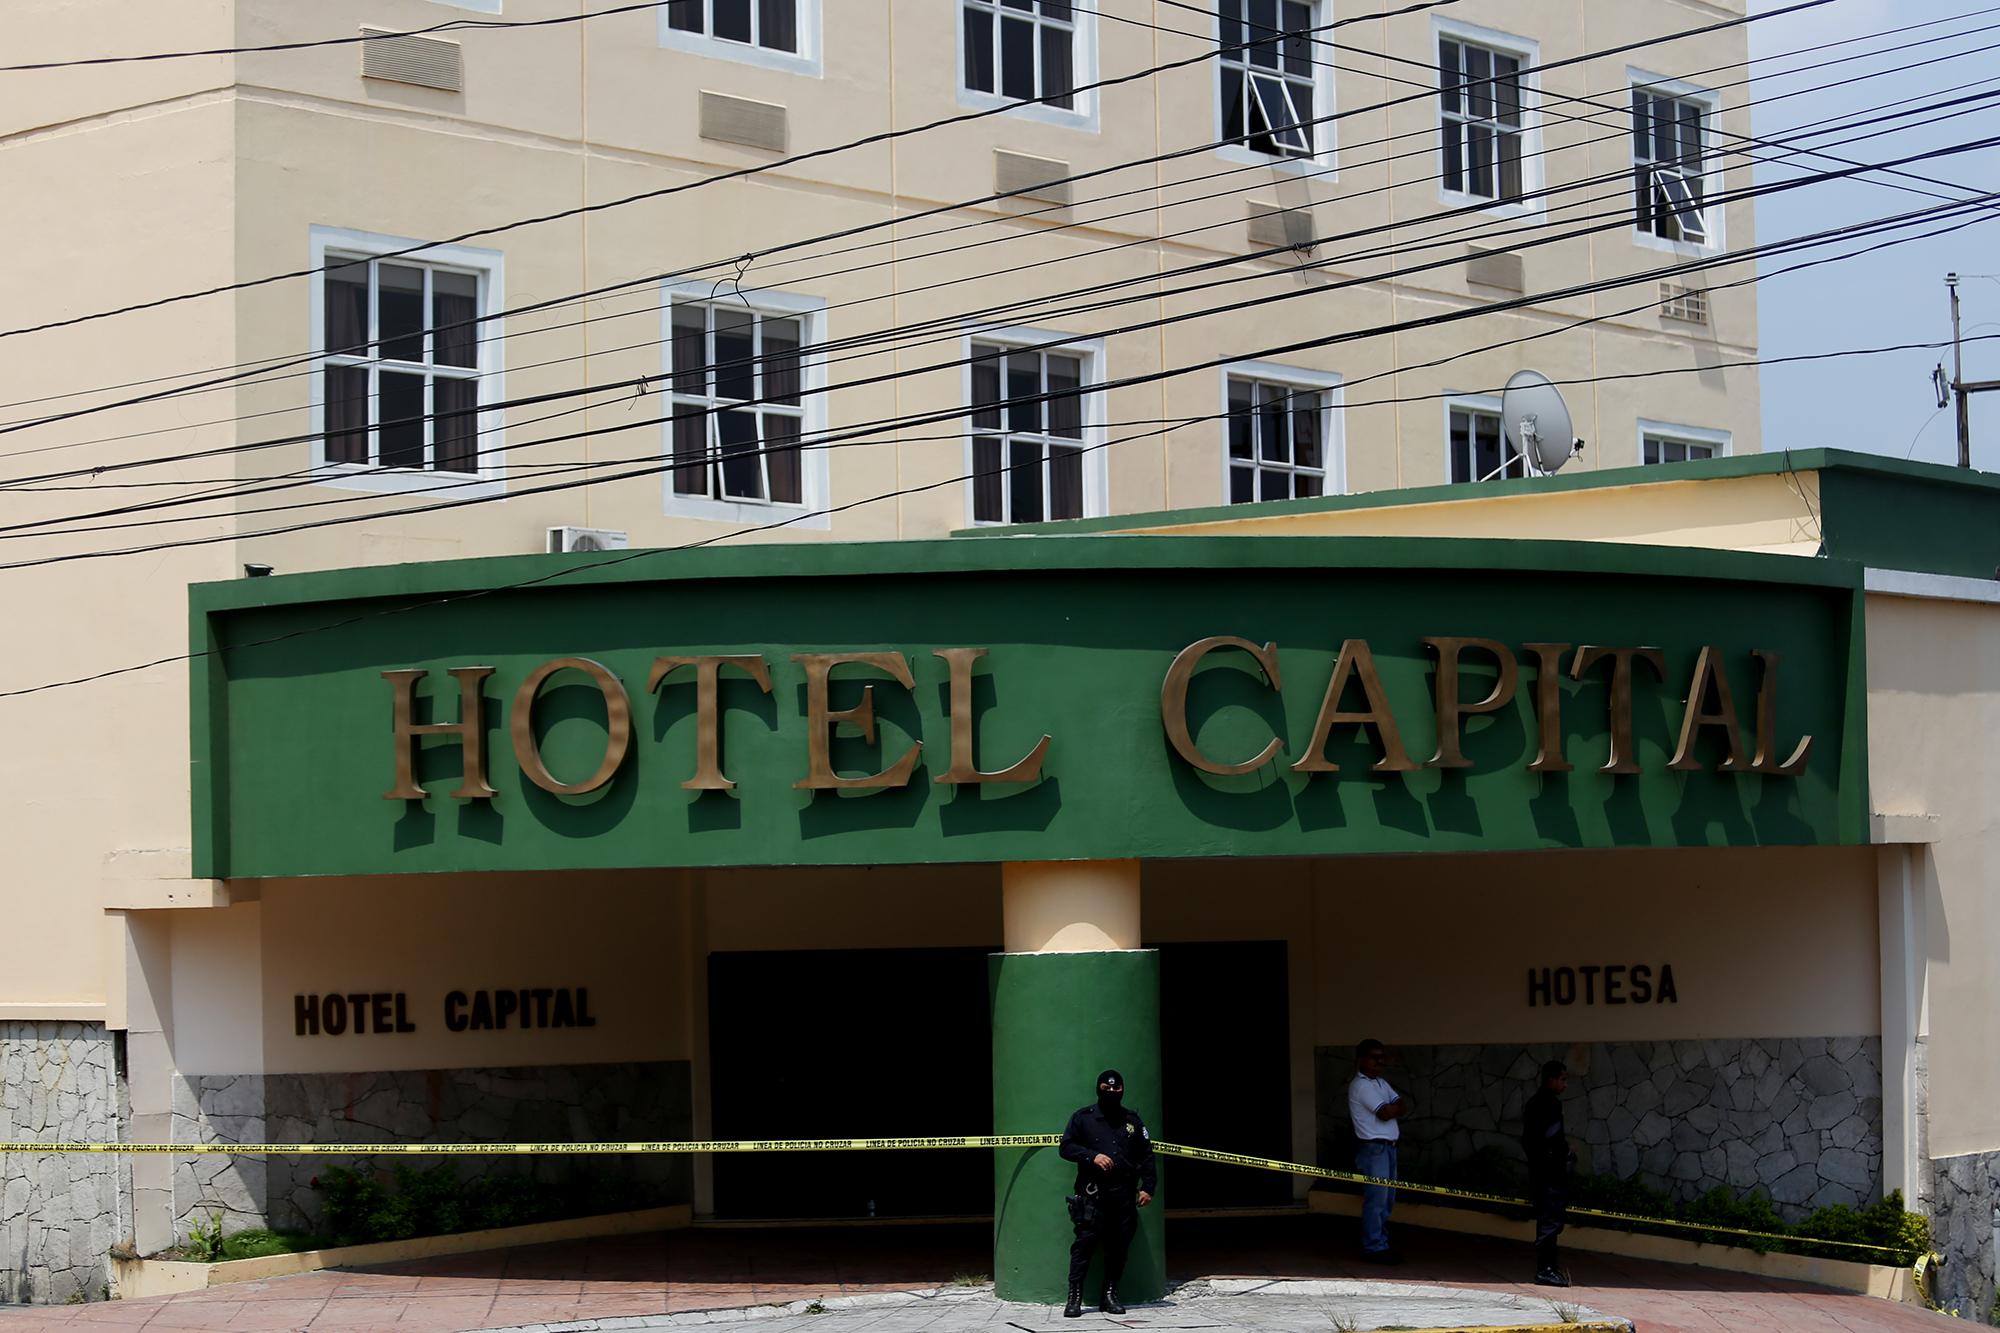 El Hotel Capital, de Hotesa, es uno de los establecimientos que fue utilizado como centro de contención. Los auditores identificaron pagos del Ministerio de Turismo a esta cadena de hoteles por servicios que no incluyeron alimentación. Foto Fred Ramos